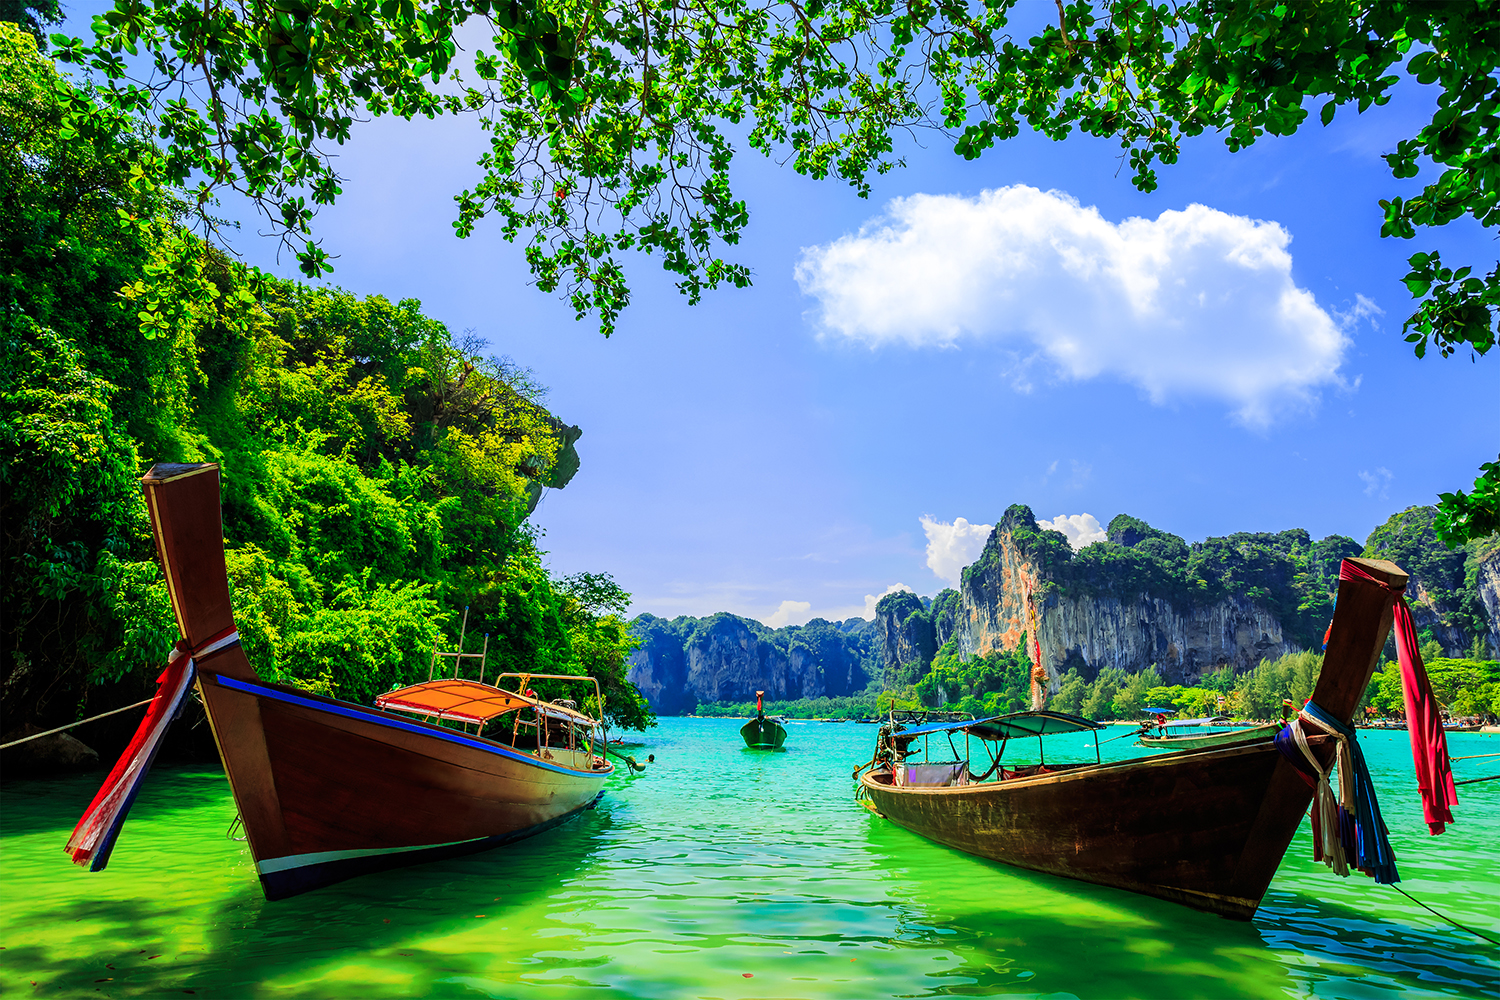 La Thaïlande ajoute de nouveaux frais touristiques malgré un déclin massif